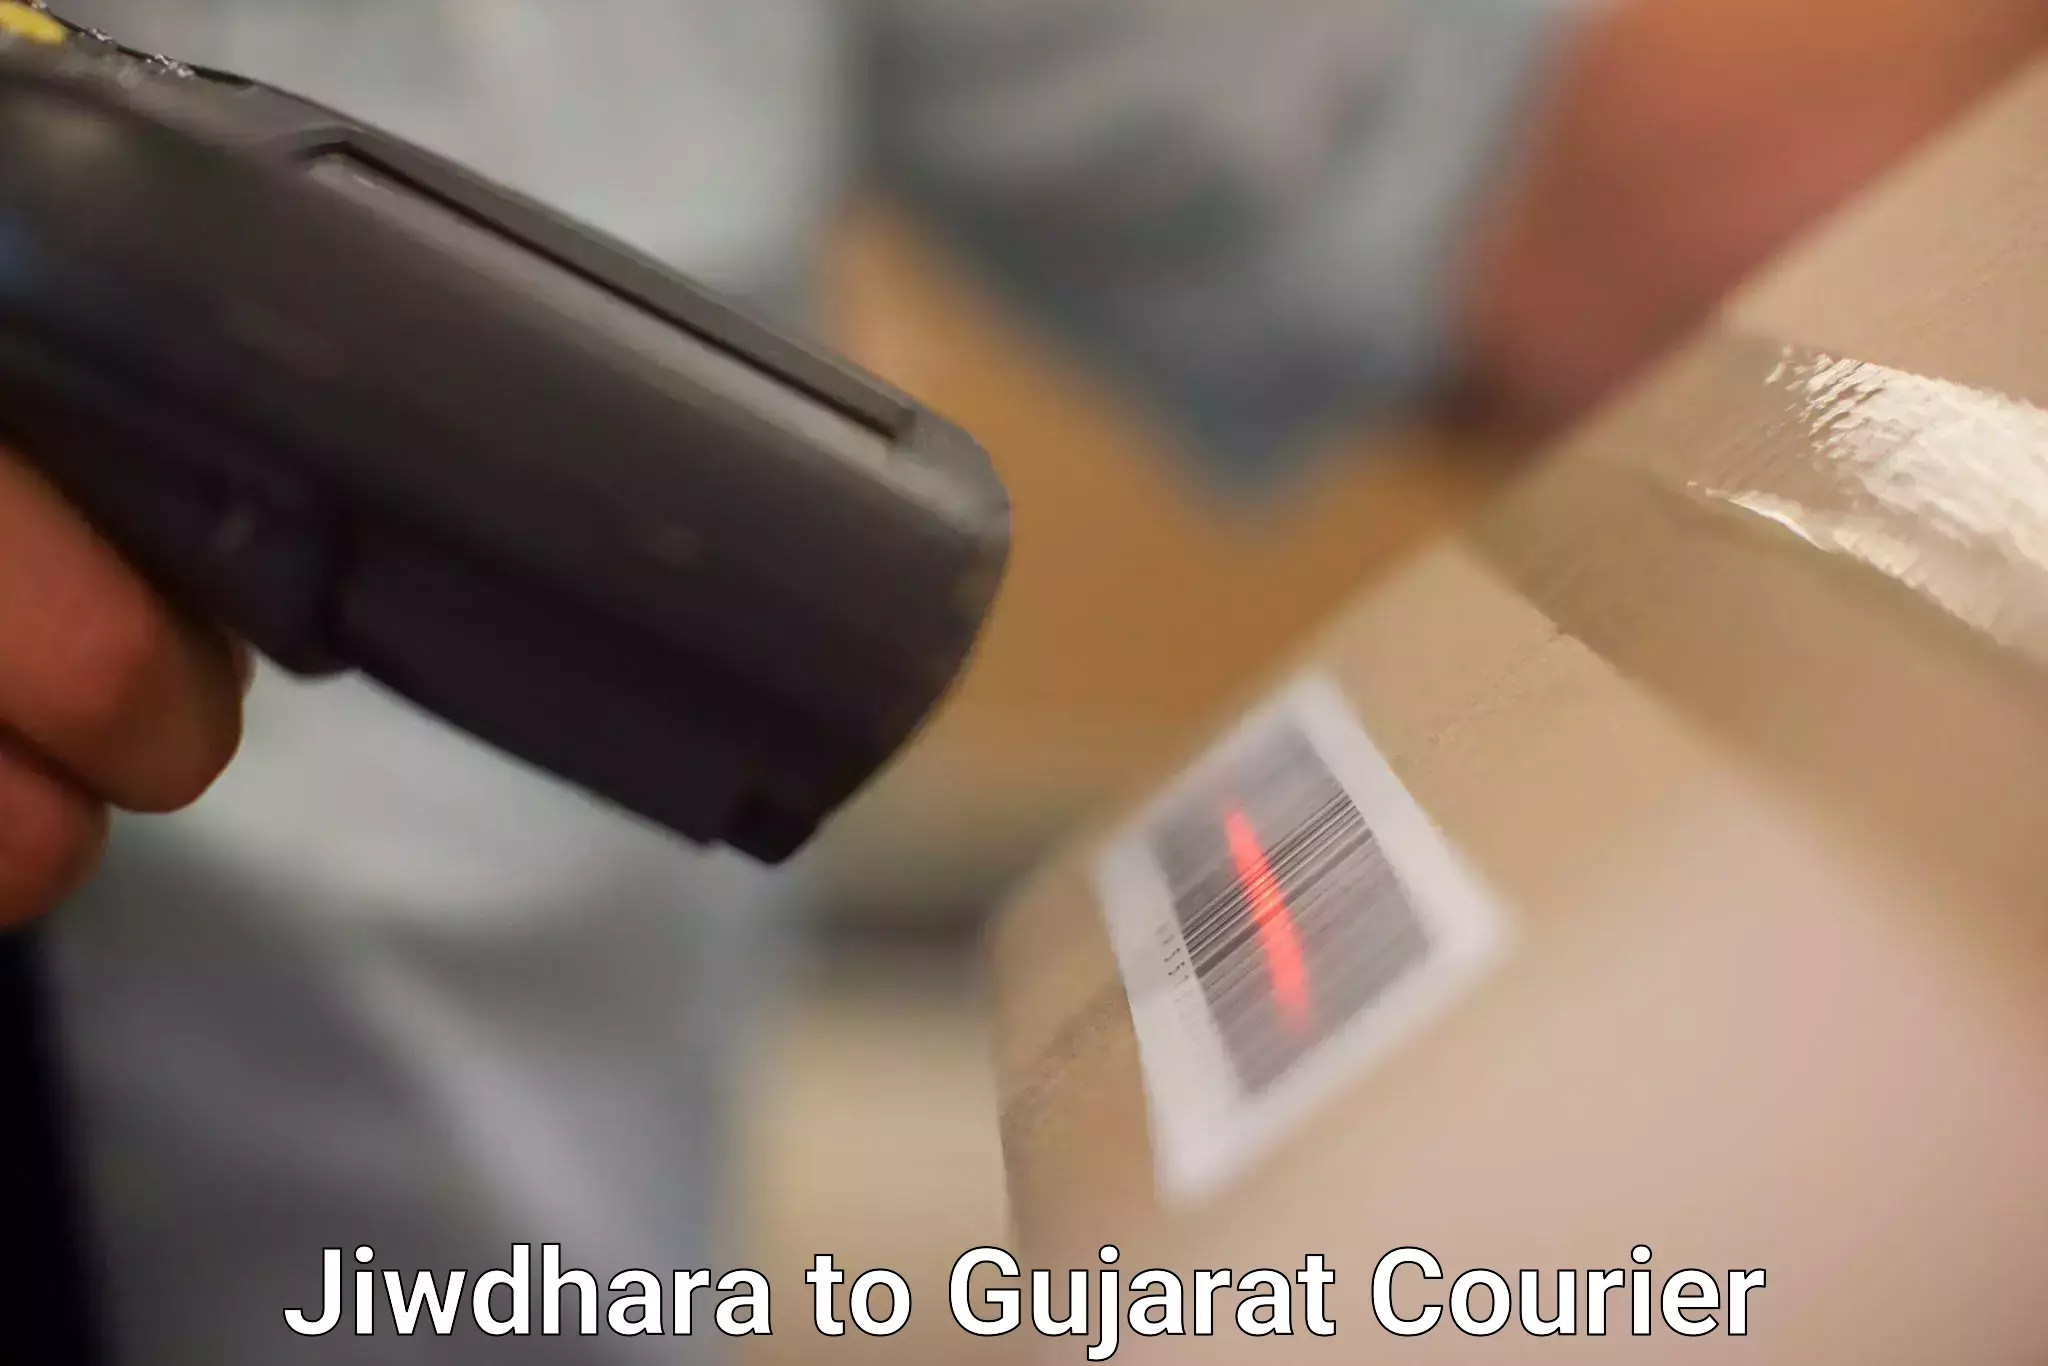 Bulk shipping discounts Jiwdhara to Chotila